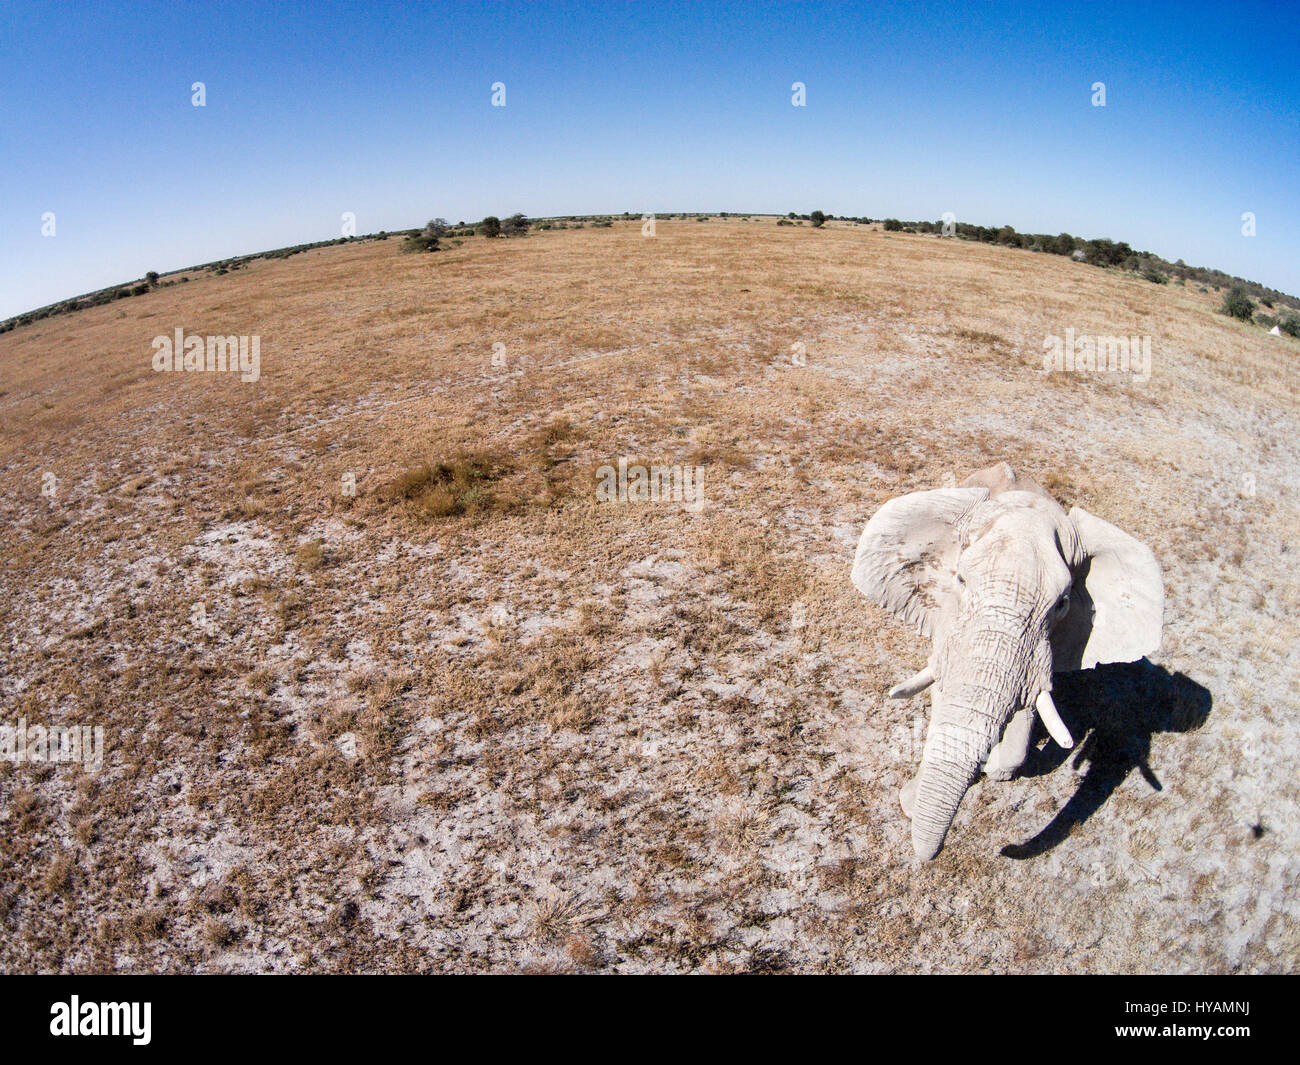 CHOBE Nationalpark, BOTSWANA: An Afrika Elefant. Eine Drohne ist auf einer Safari im tiefsten Afrika gegangen. Die mächtigen Tiere Afrikas ist von Löwen und Gnus, Elefanten und Giraffen in dieser 500-Füße hoch Drohne-Auge Ansicht des Kontinents zu sehen. Fotograf Paul Souders (53) nahm seine DJI Phantom Vision 2 + Drohne auf einer langen Reise 10,000 Meile von seinem Haus in Seattle, USA nach Botswana im südlichen Afrika. Seine Bilder zeigen wie die Tierarten reagieren auf die außerirdische Präsenz der Drohne, während er einfach entspannt und seine Maschine macht die ganze harte Arbeit. Stockfoto